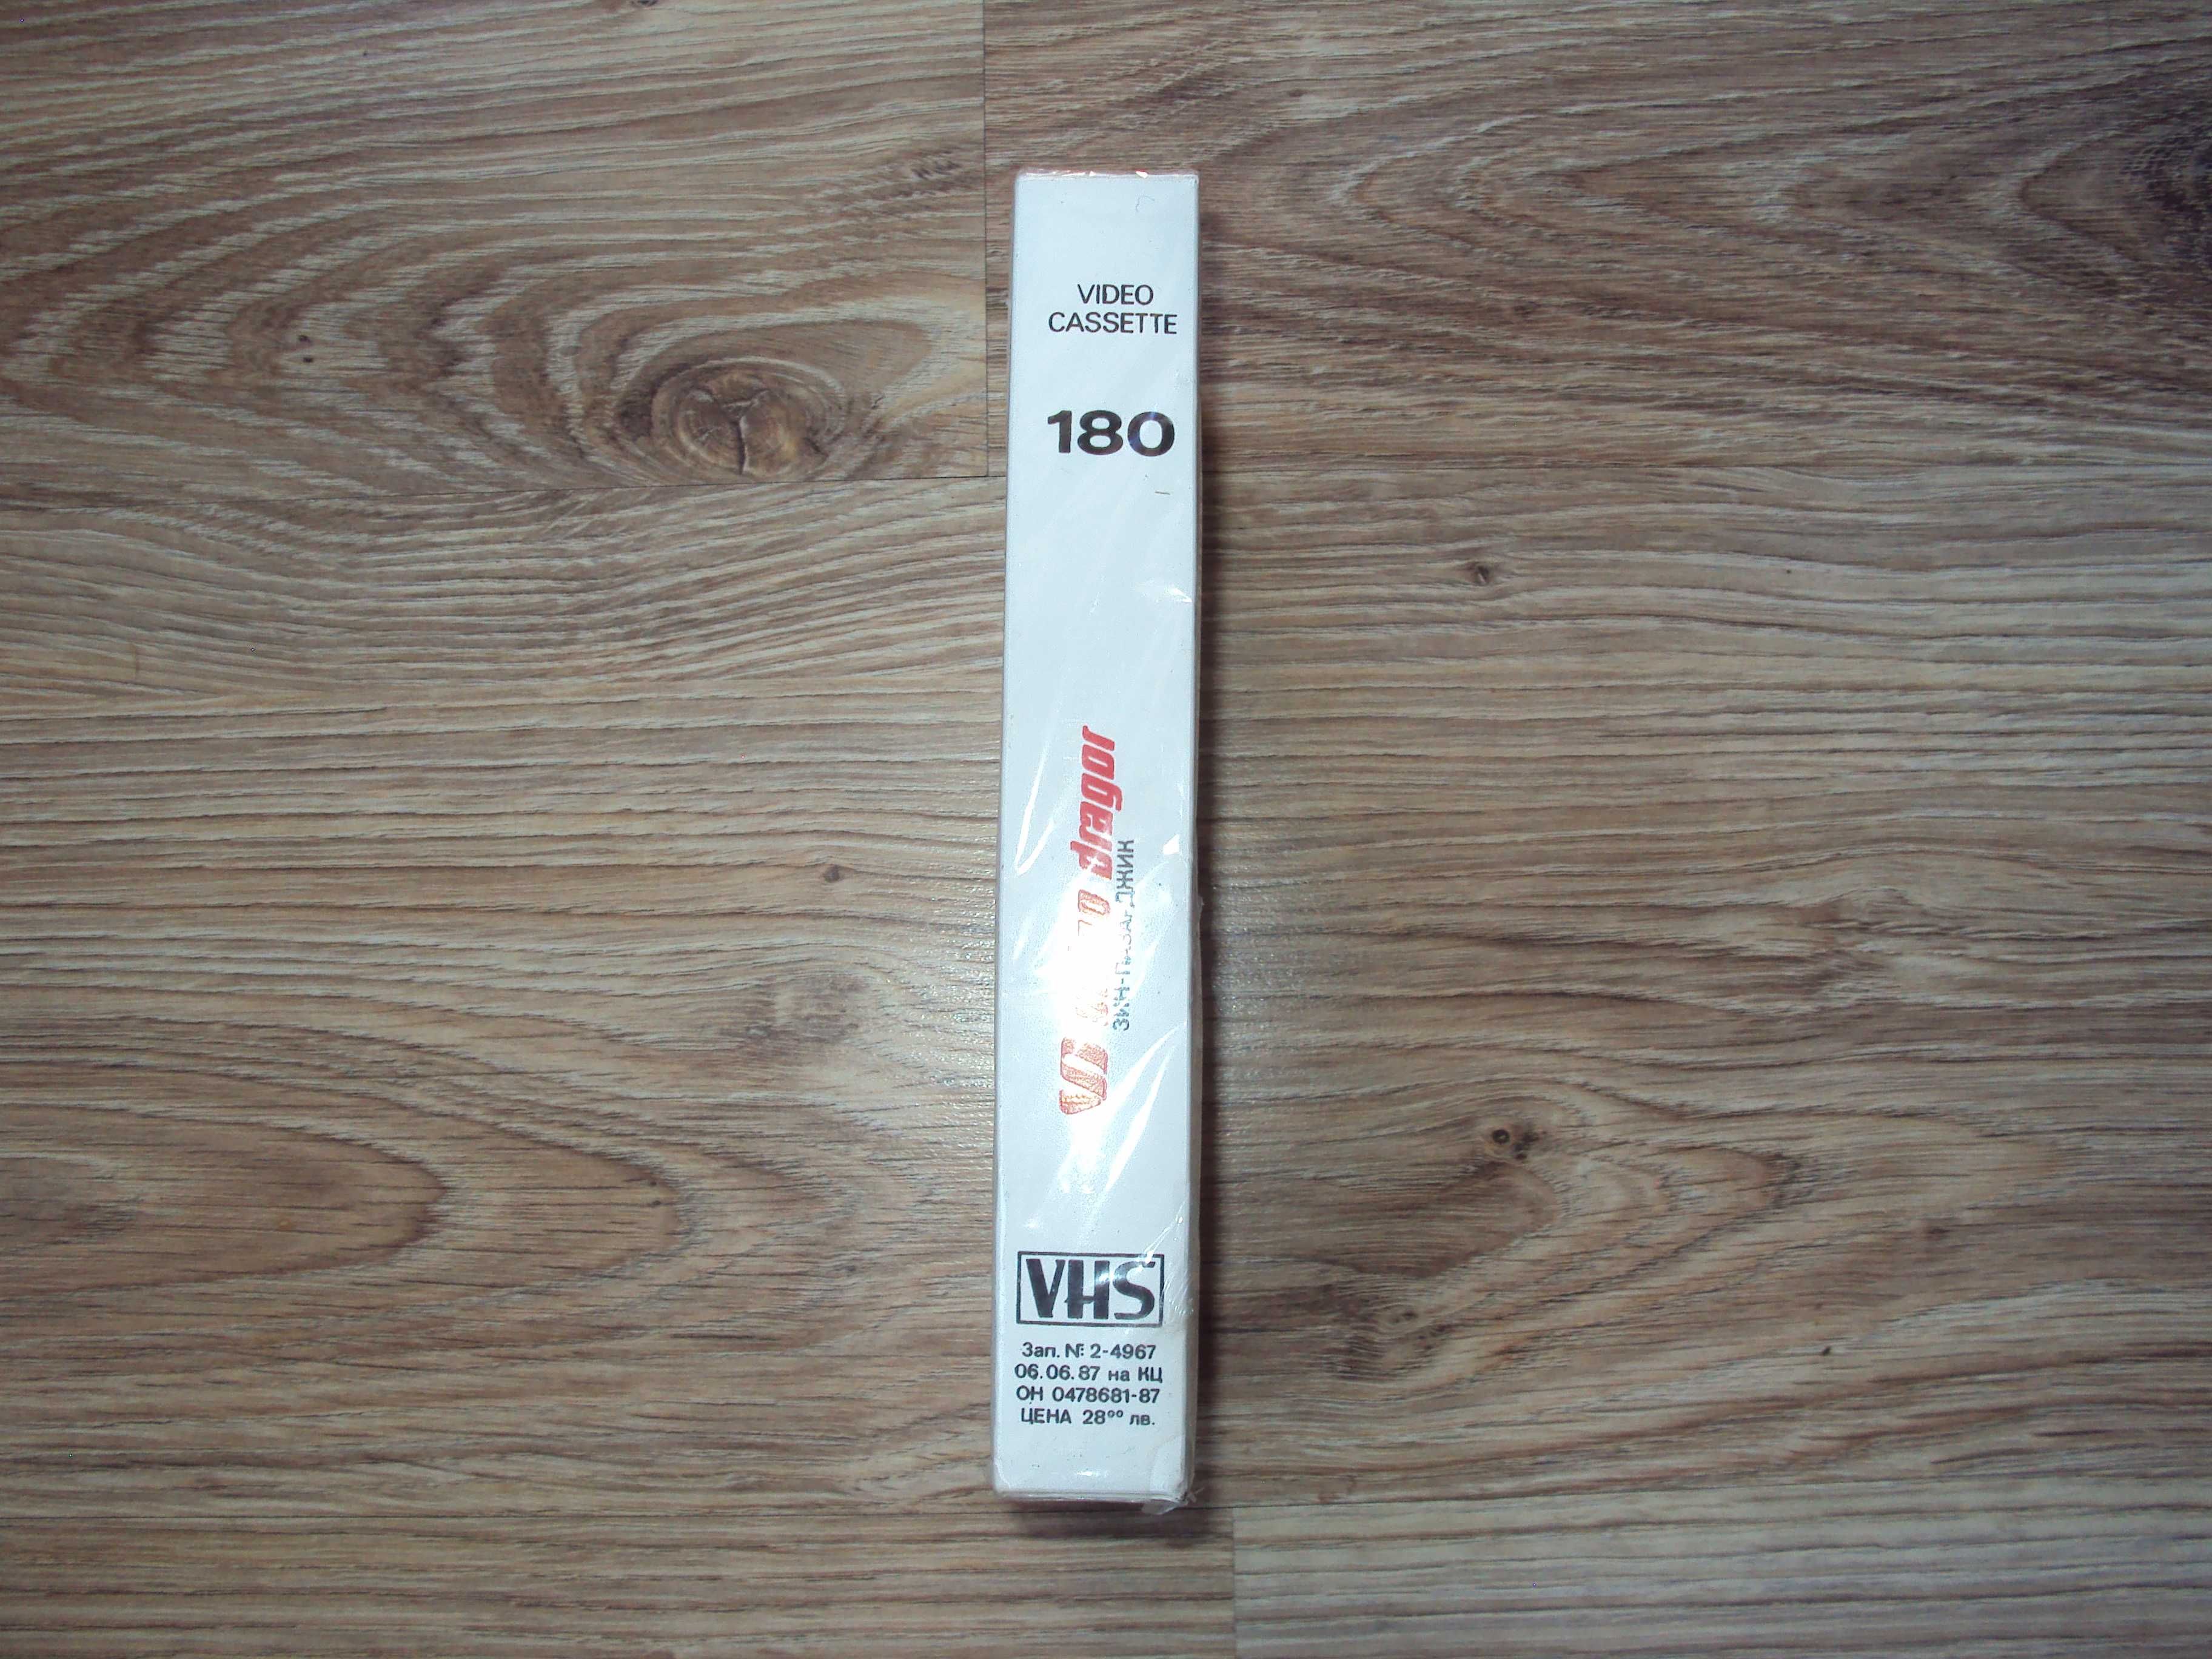 1987 Българска запечатана видео касета ДРАГОР VHS 180 ЗИН Пазарджик